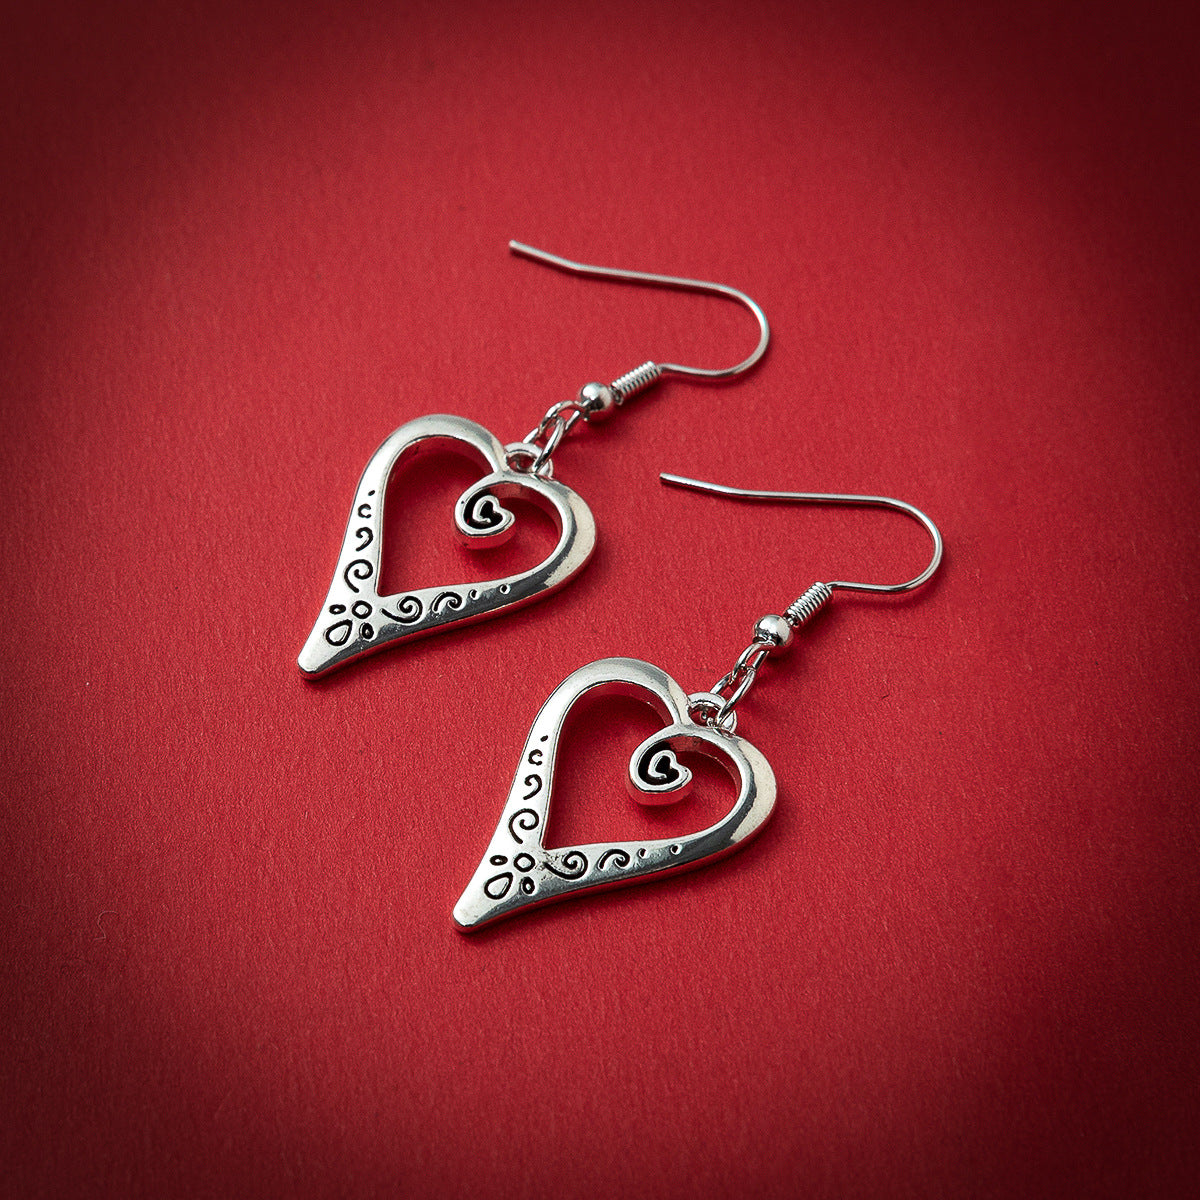 Minimalist love heart earrings-canovaniajewelry